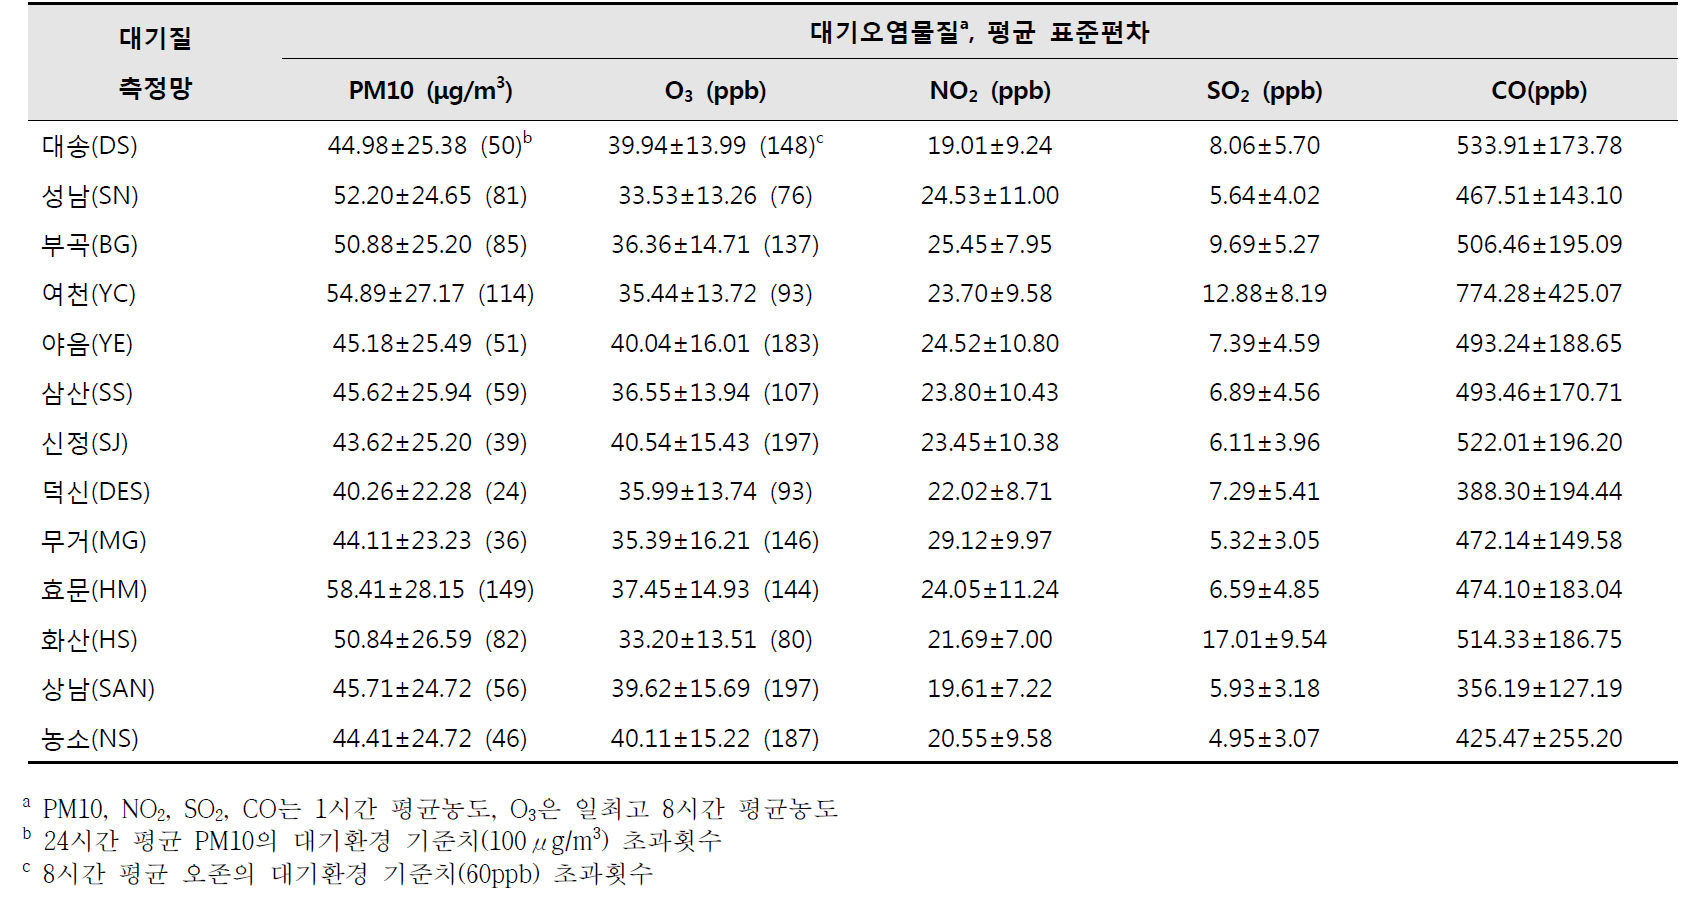 울산광역시 13개 대기질 측정망의 2009~2014년 평균 대기오염도